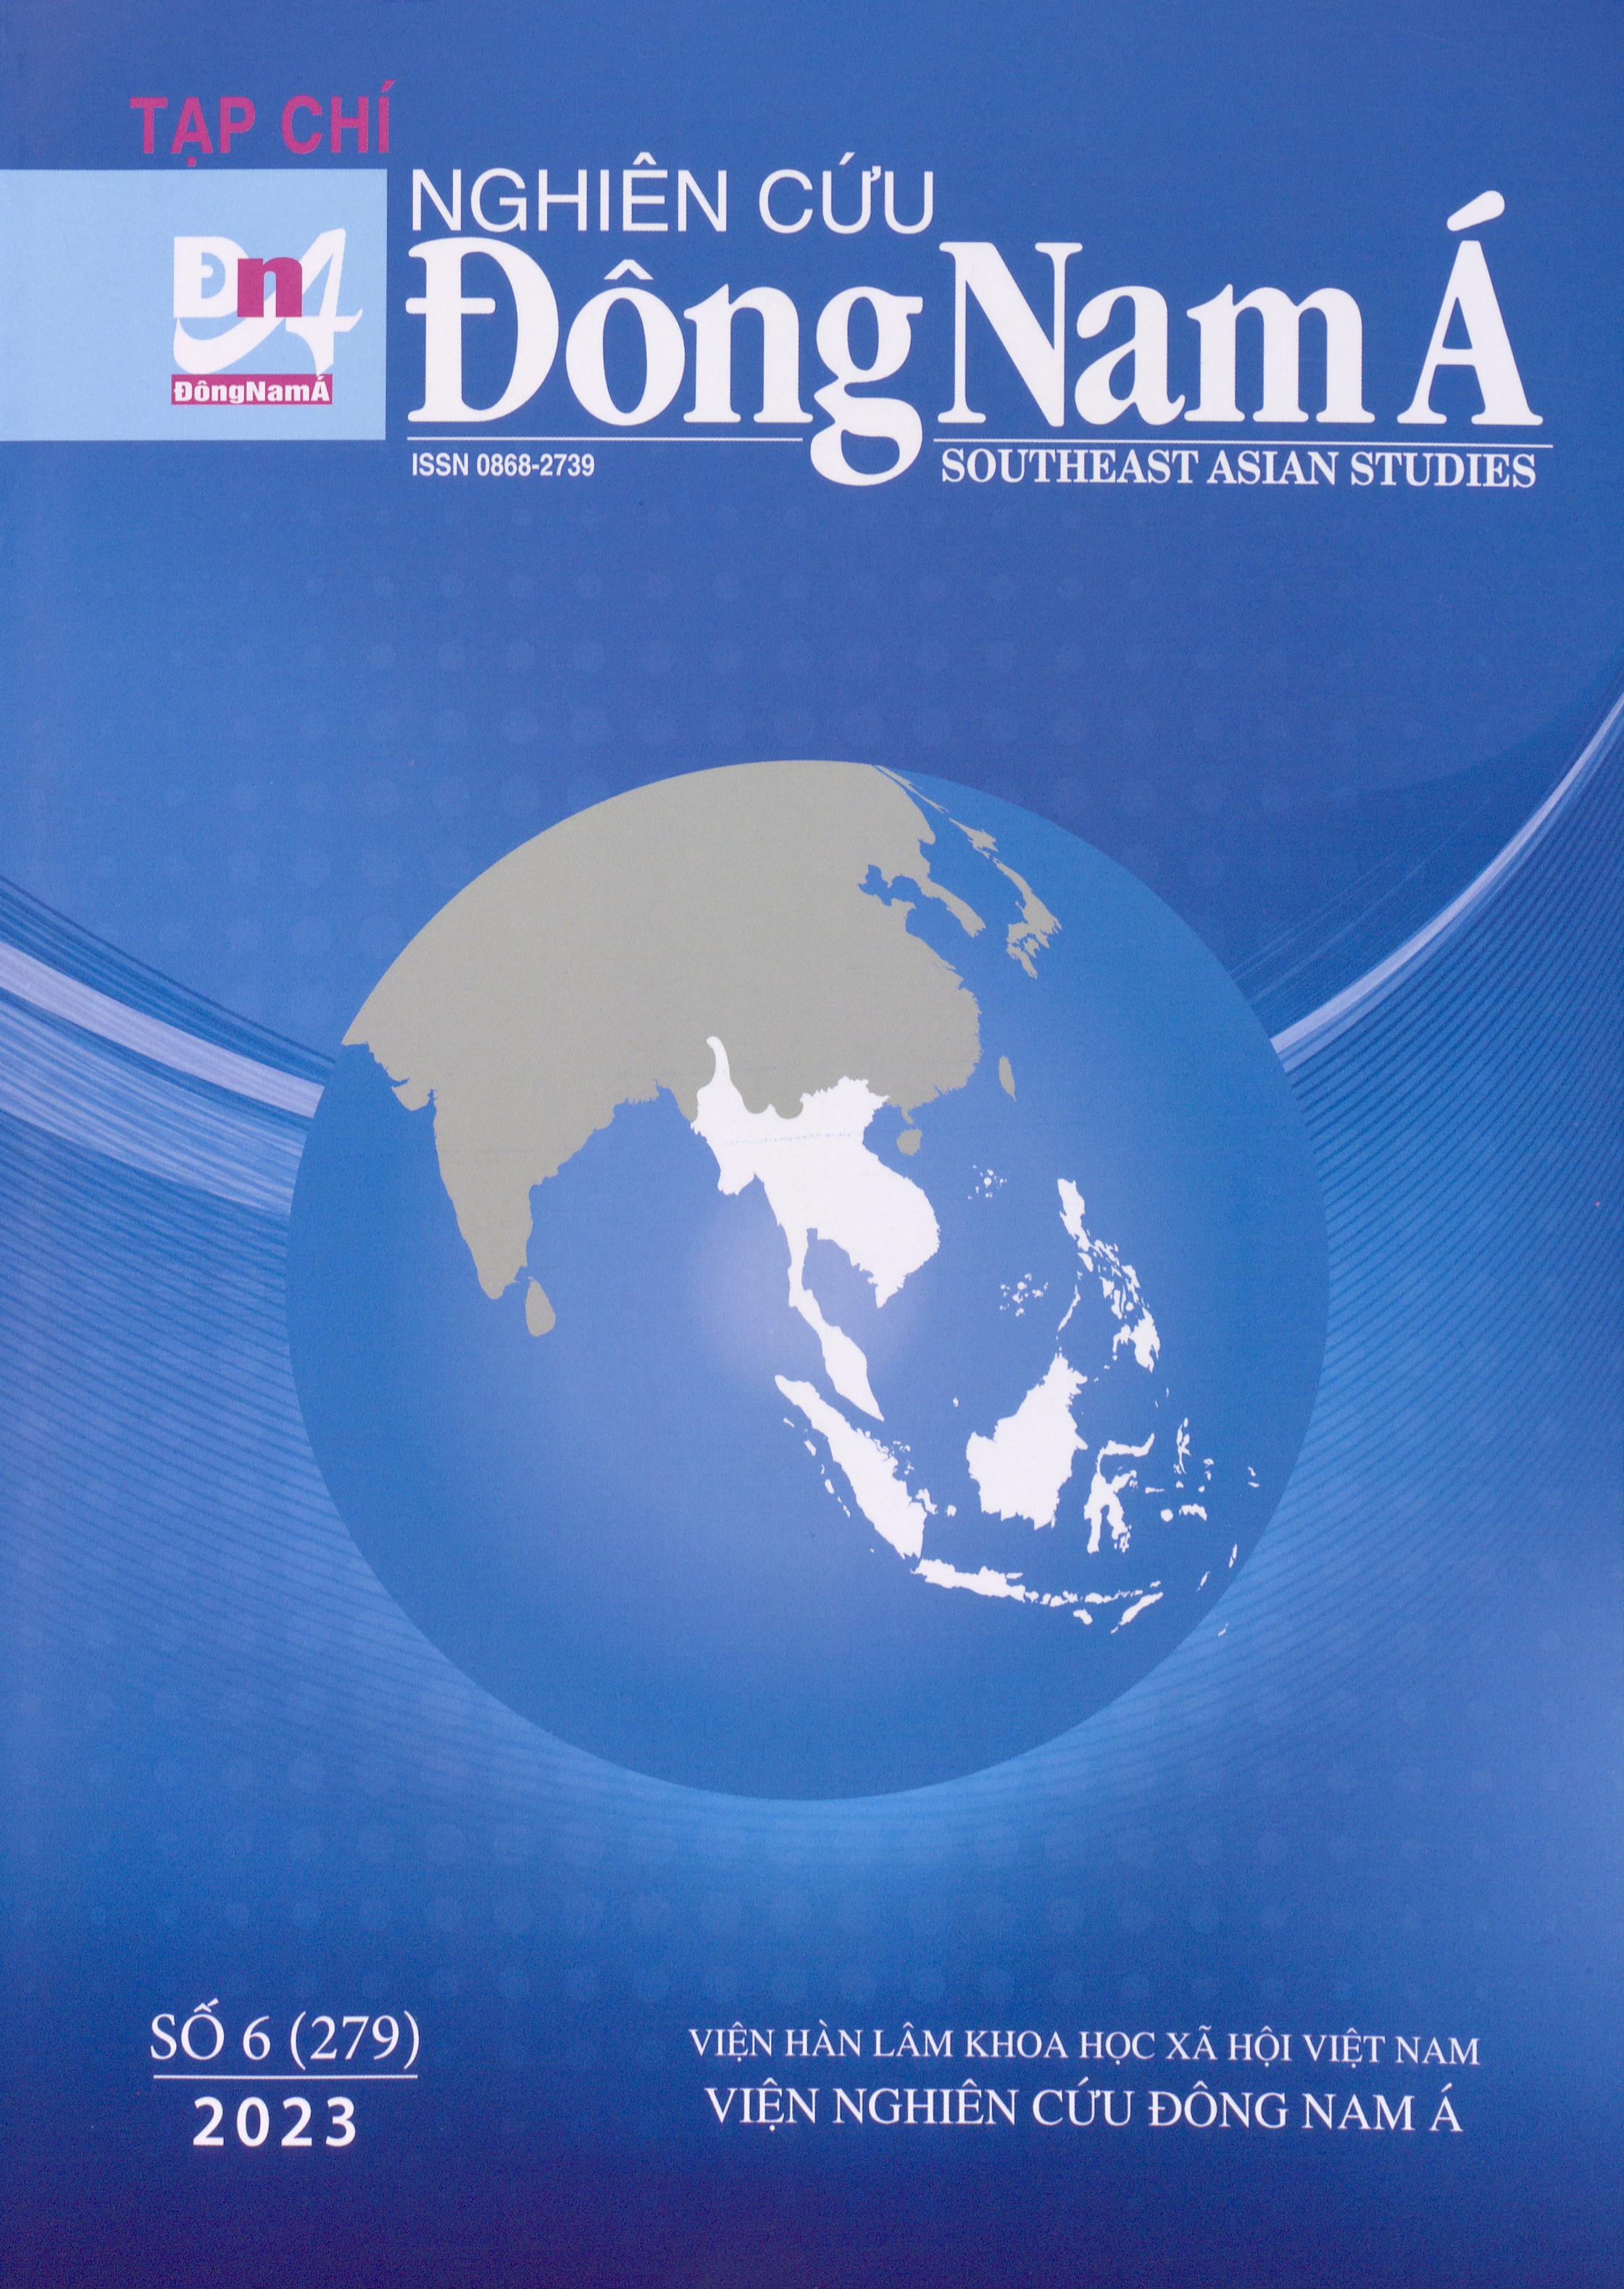 Tạp chí Nghiên cứu Đông Nam Á, số 6 năm 2023